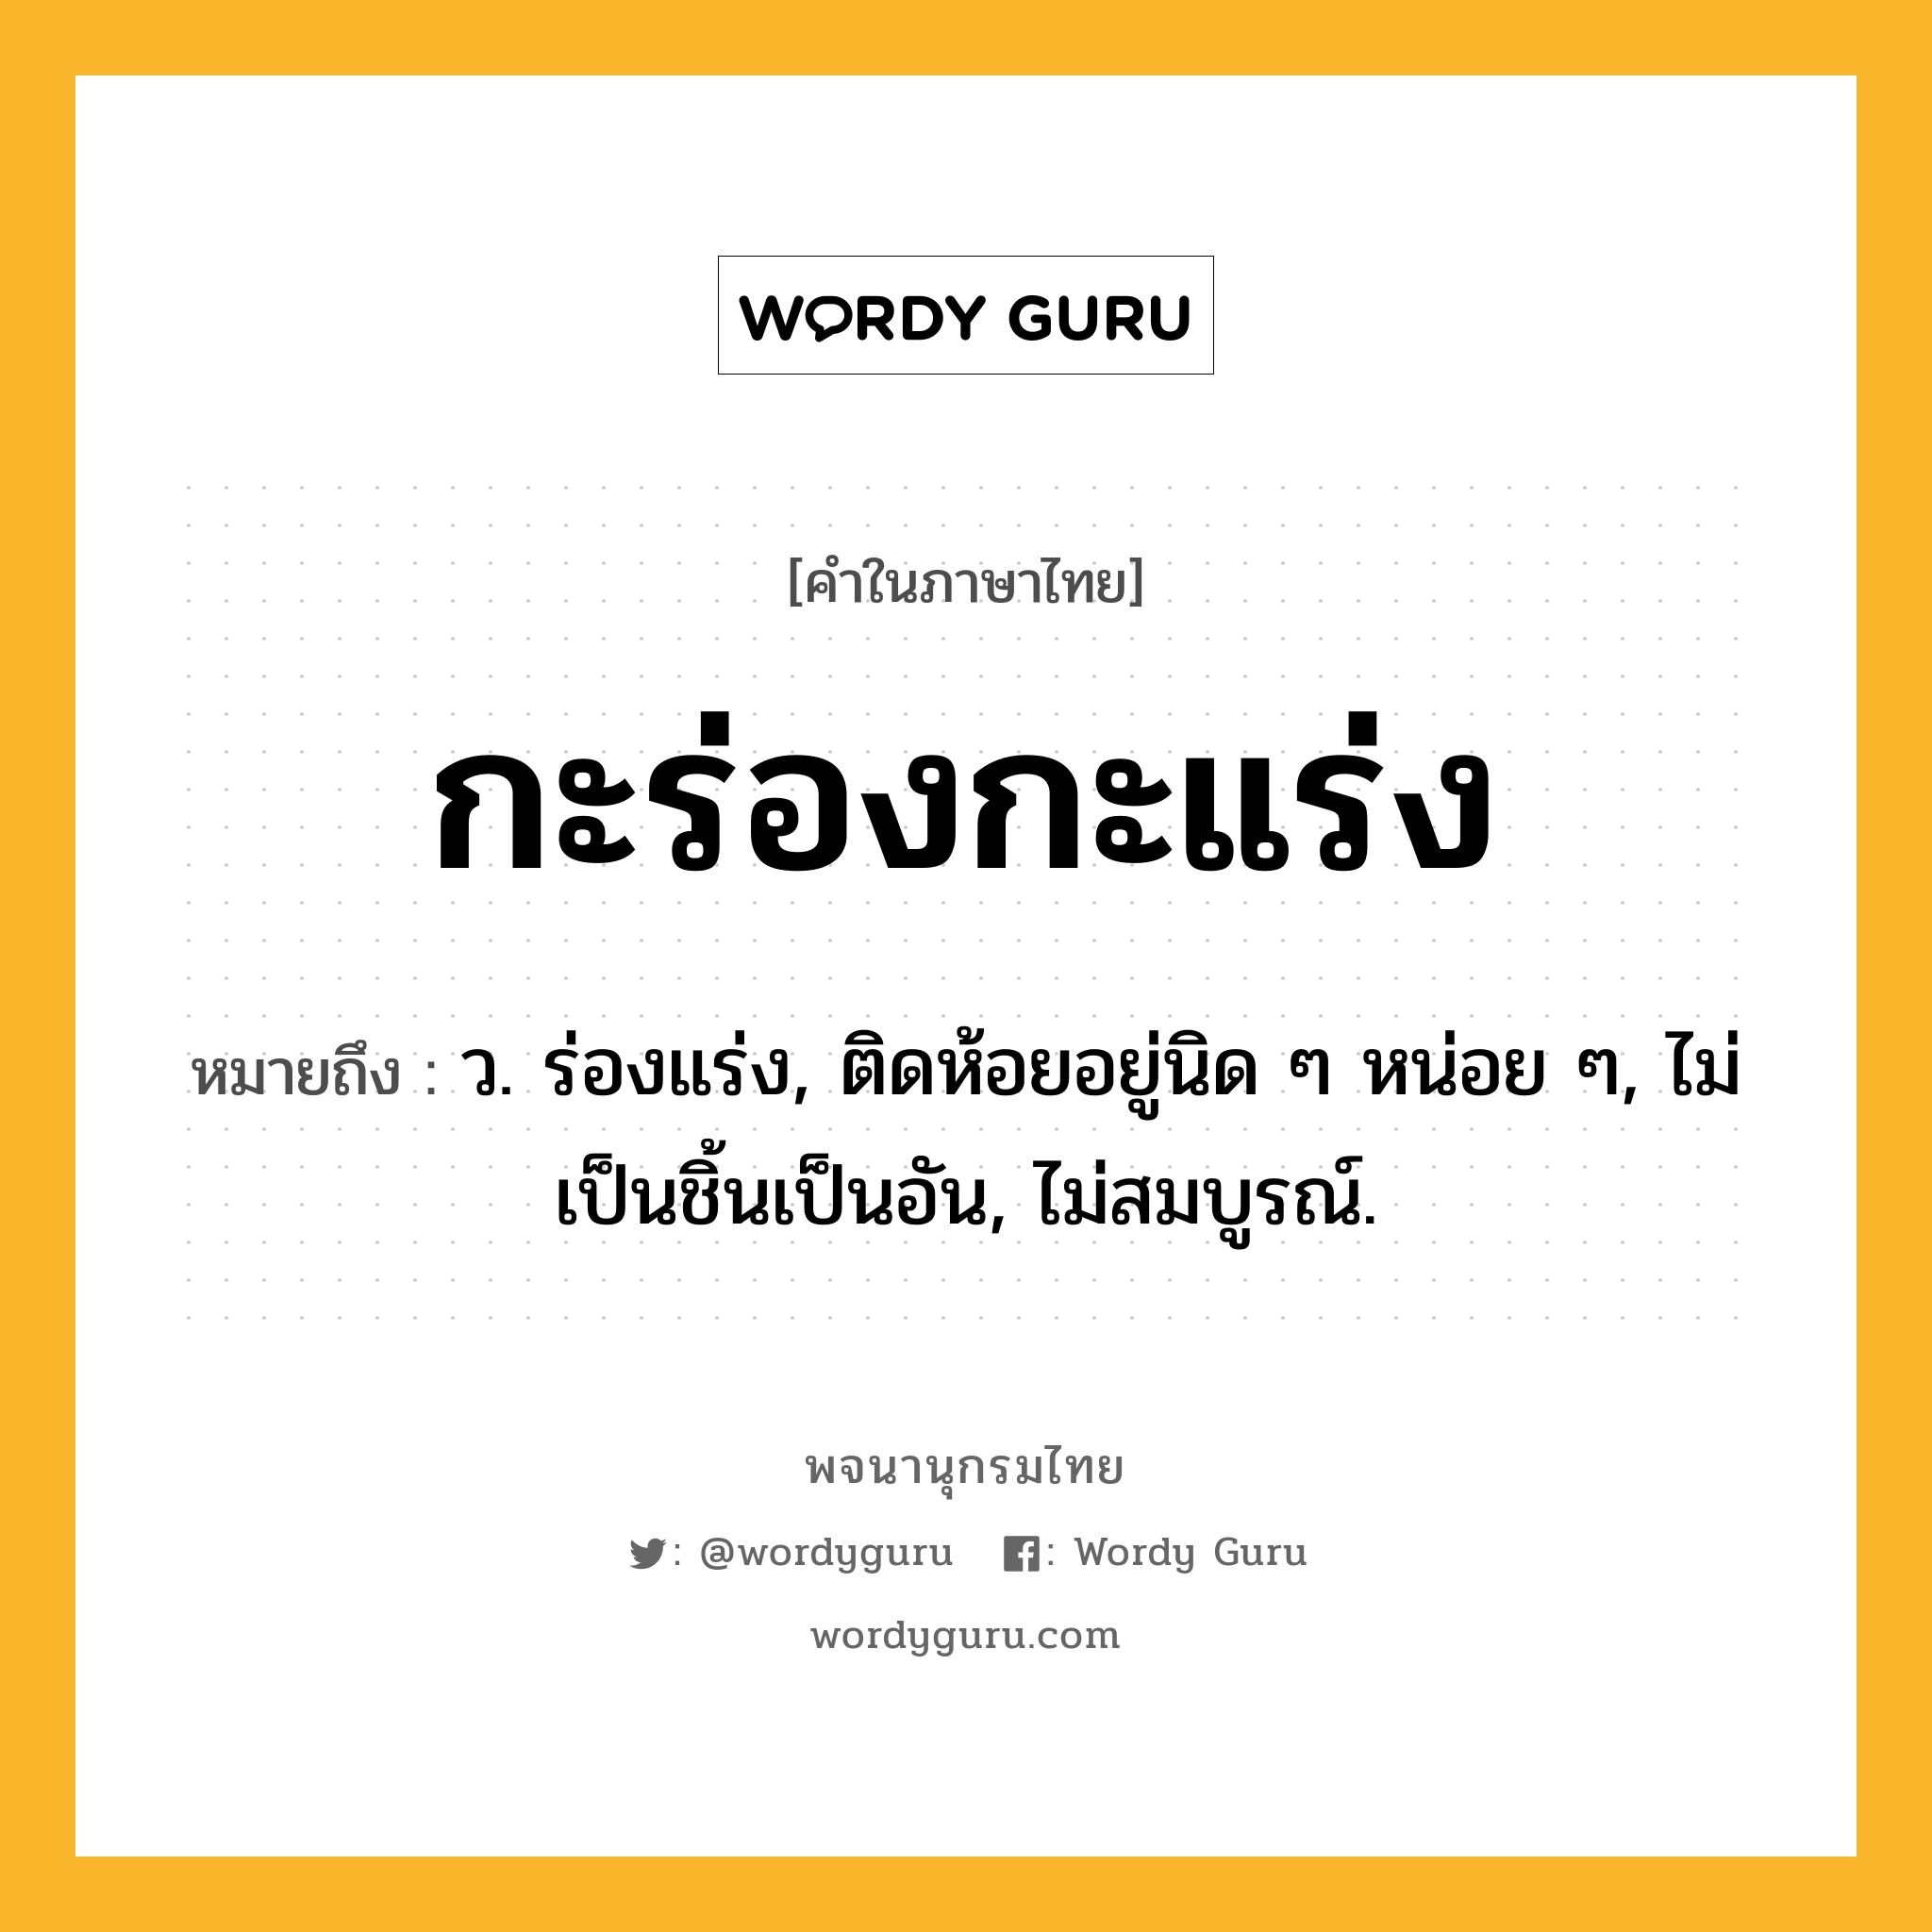 กะร่องกะแร่ง หมายถึงอะไร?, คำในภาษาไทย กะร่องกะแร่ง หมายถึง ว. ร่องแร่ง, ติดห้อยอยู่นิด ๆ หน่อย ๆ, ไม่เป็นชิ้นเป็นอัน, ไม่สมบูรณ์.